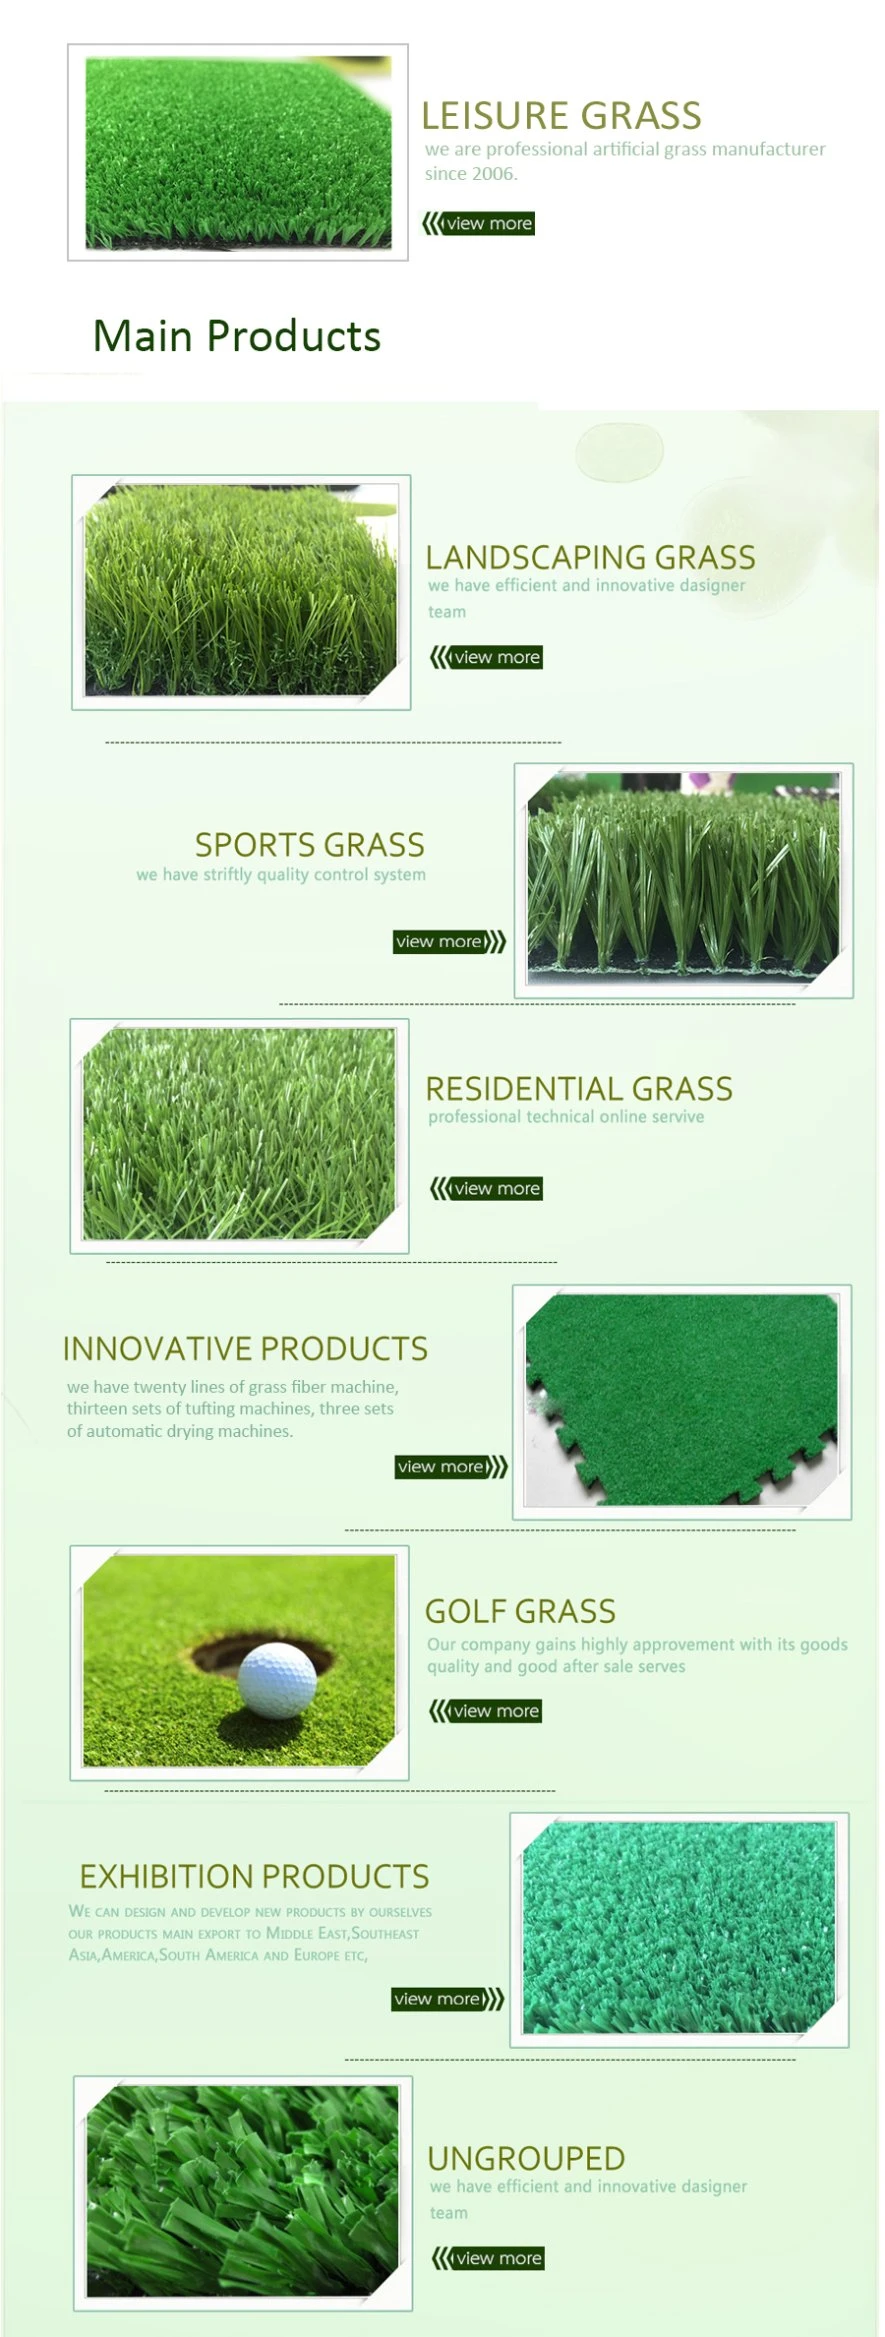 High Quality Waterproof 10mm Leisure Grass Artificial Grass Floor Carpets